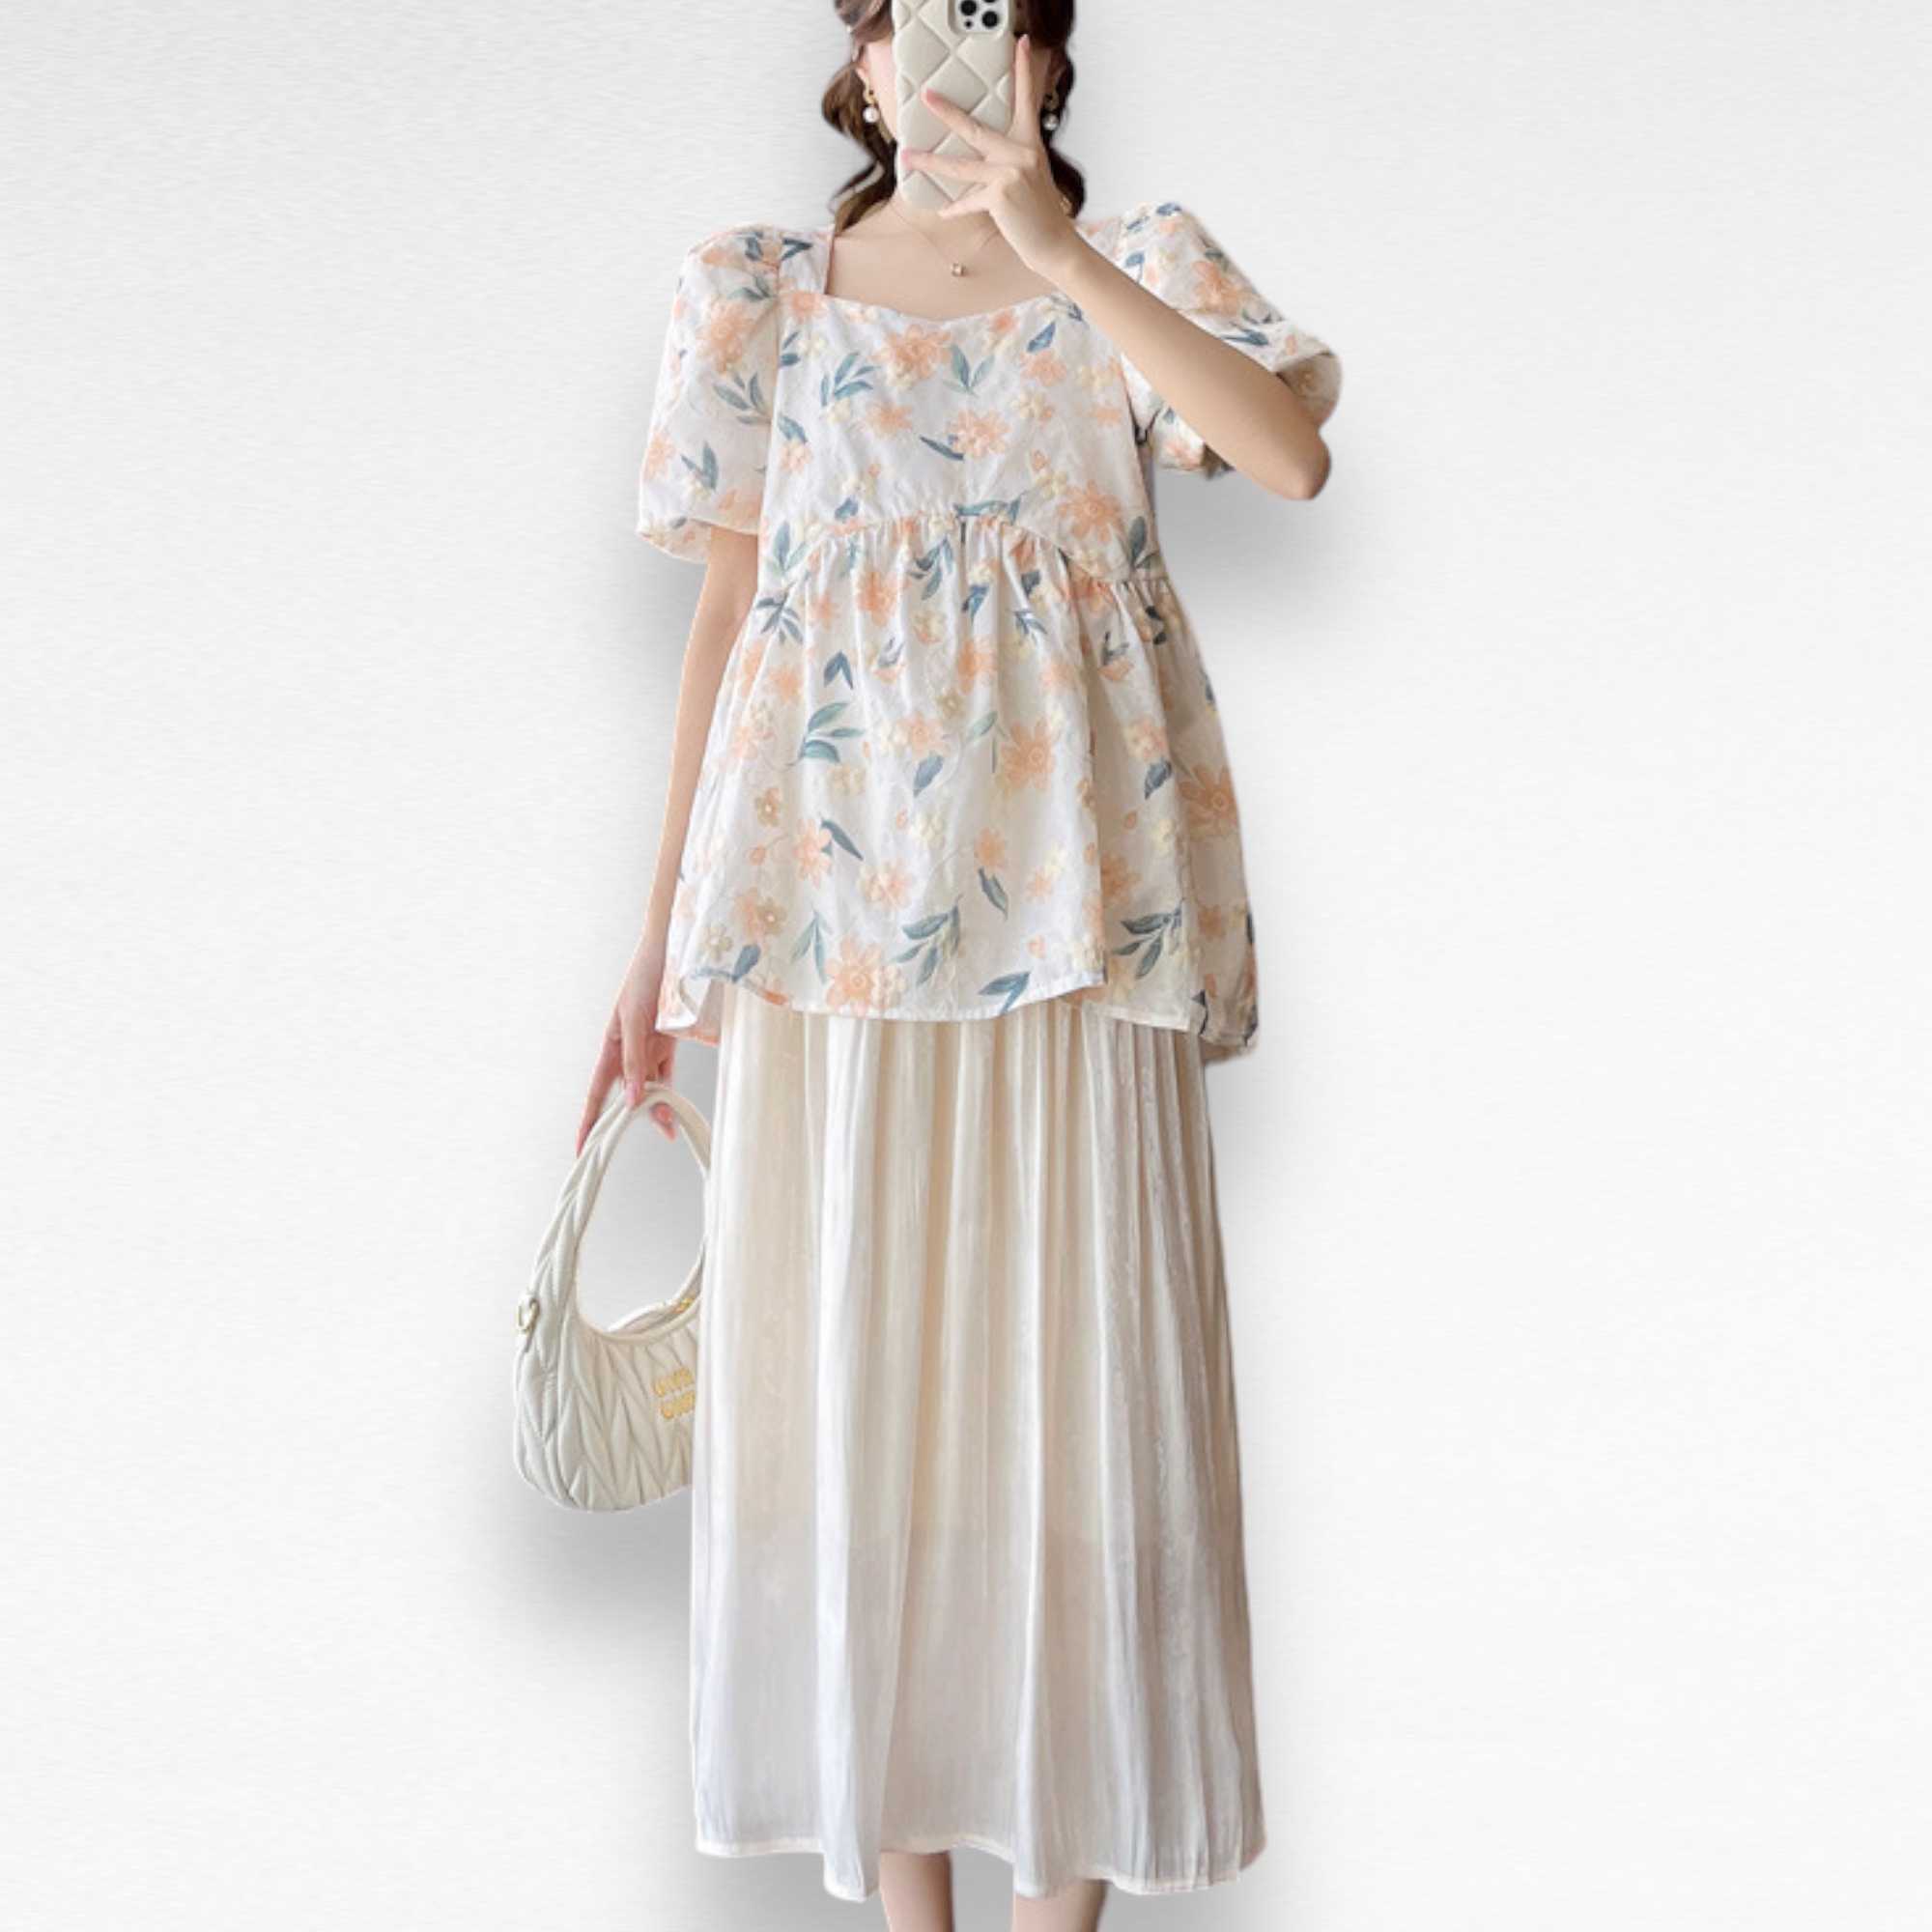 แบบเซ็ต 2 ชิ้น - เสื้อโทนสีขาวครีมงานผ้าปักลายดอกไม้สวยมาก  เข้าเซ็ตกับงานกระโปรงสีครีมผ้าซิลค์